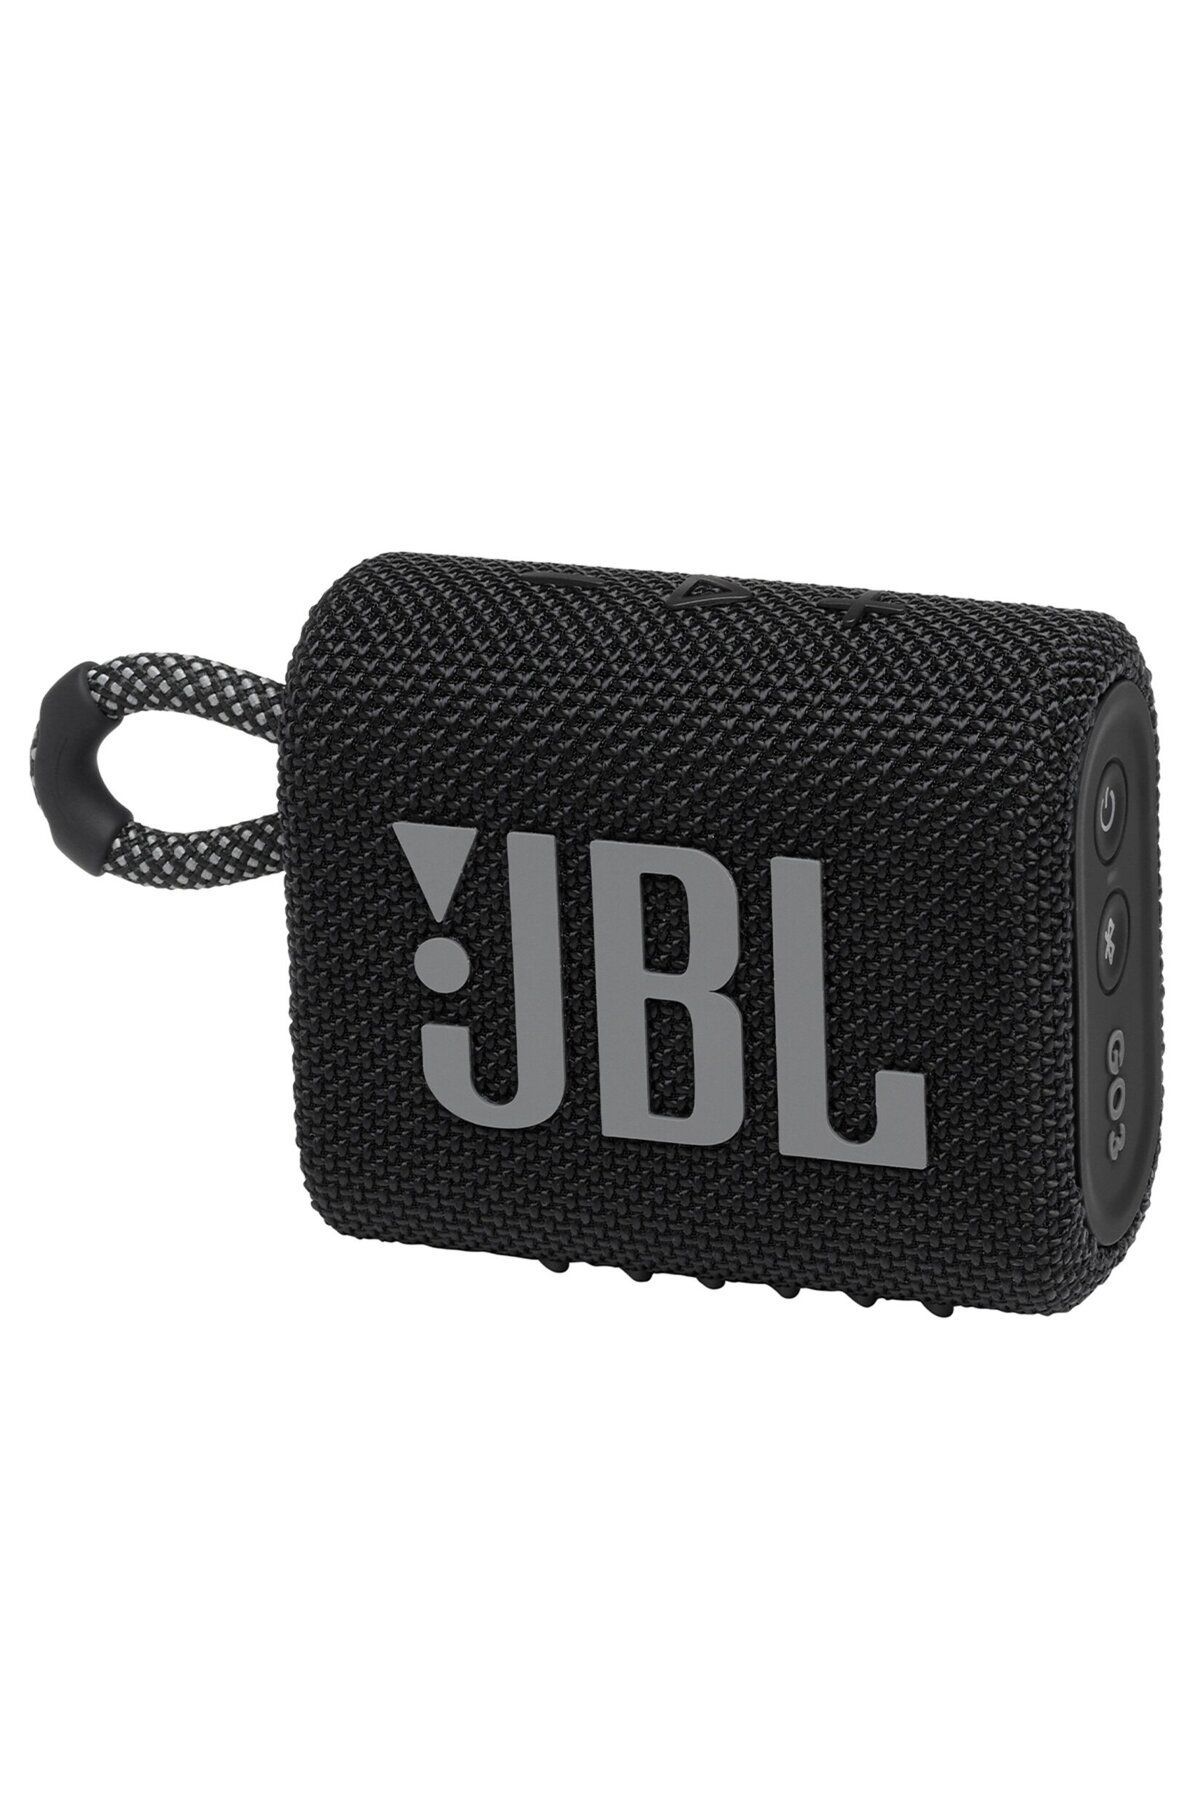 JBL Go 3 Bluetooth Hoparlör Taşınabilir Siyah Ses Bombası Su Geçirmez